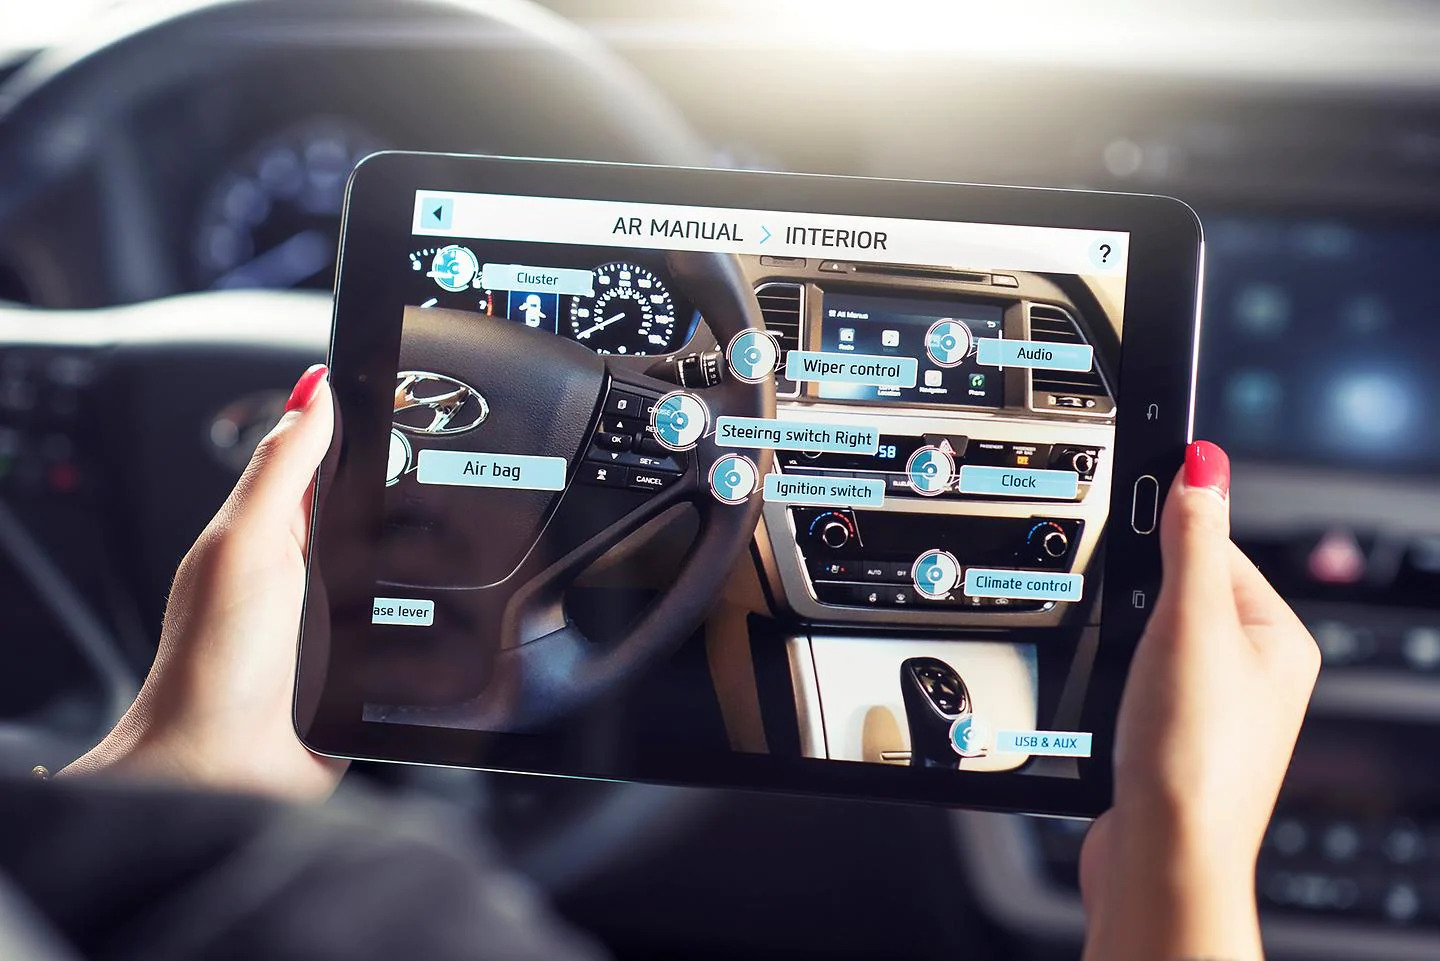 Imagem de uma pessoa segurando um tablet dentro do carro. Na tela do tablet, há a realidade aumentada mostrando os itens do painel do carro, como volante, botões e demais acessórios.